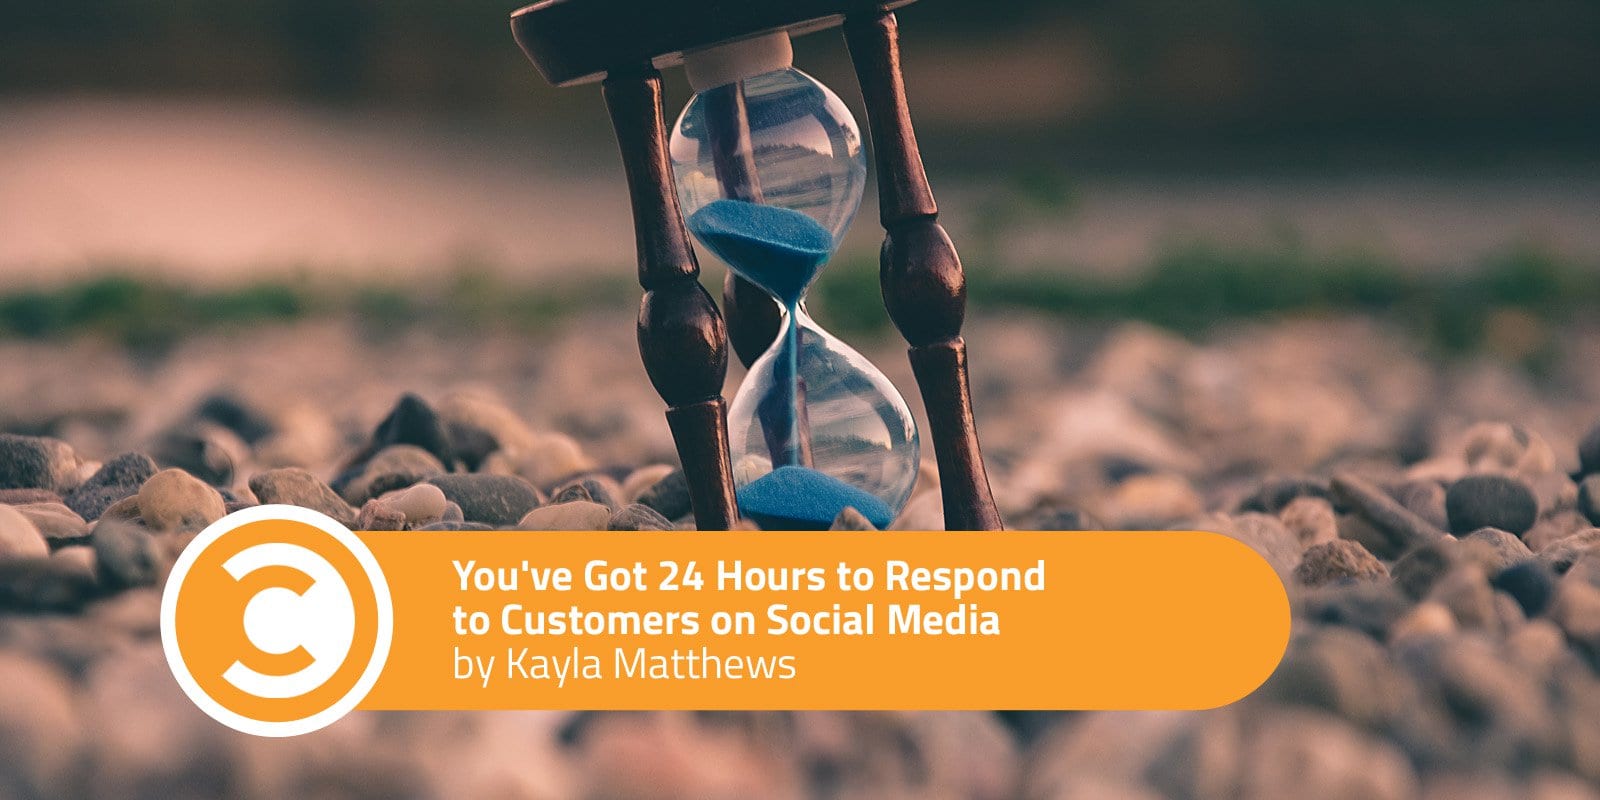 Tienes 24 horas para responder a los clientes en las redes sociales